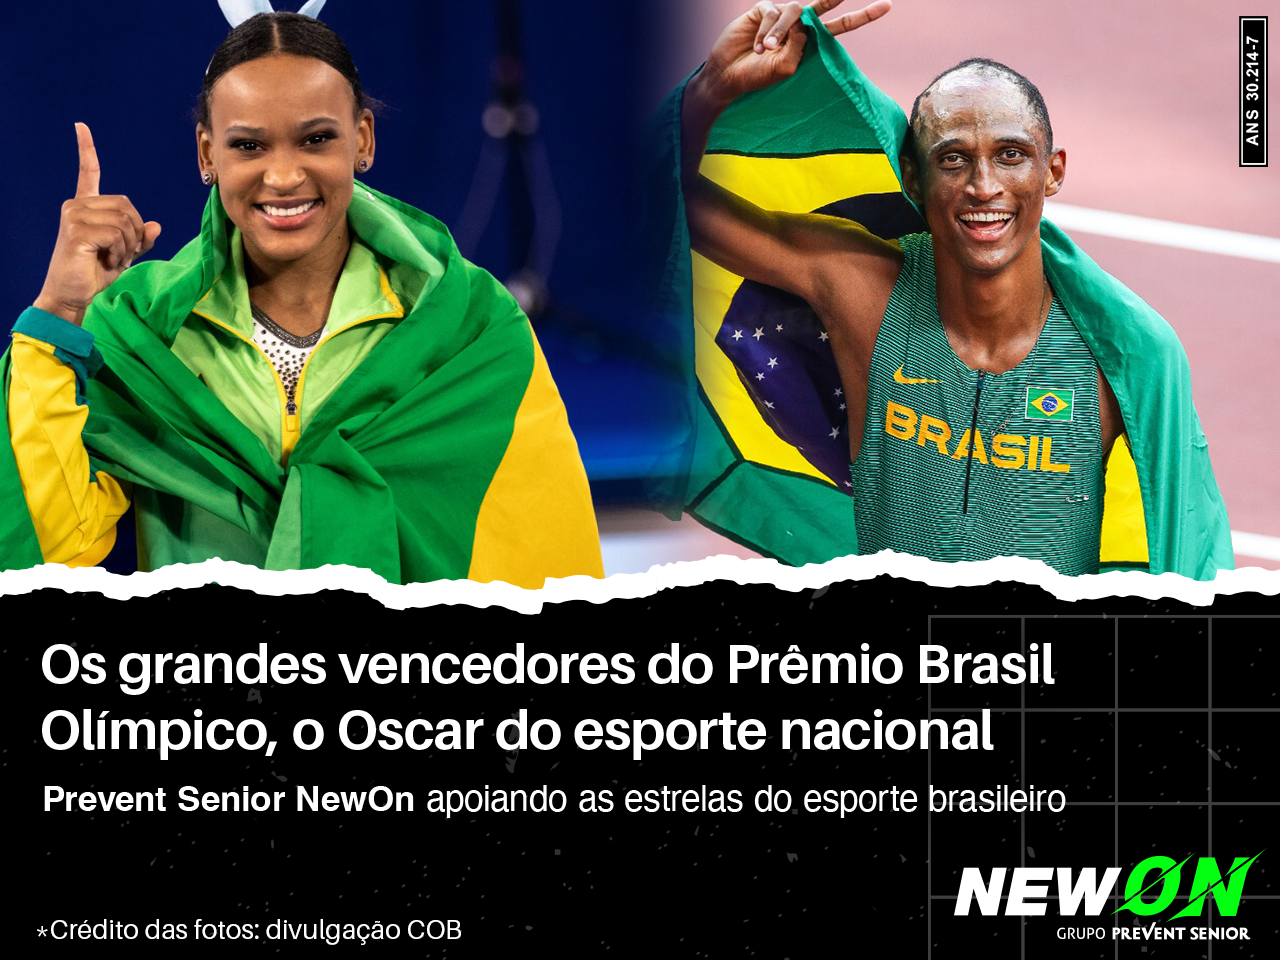 Prêmio Brasil Olímpico 2022: Rebeca Andrade e Alison dos Santos vencem na categoria Atleta do Ano